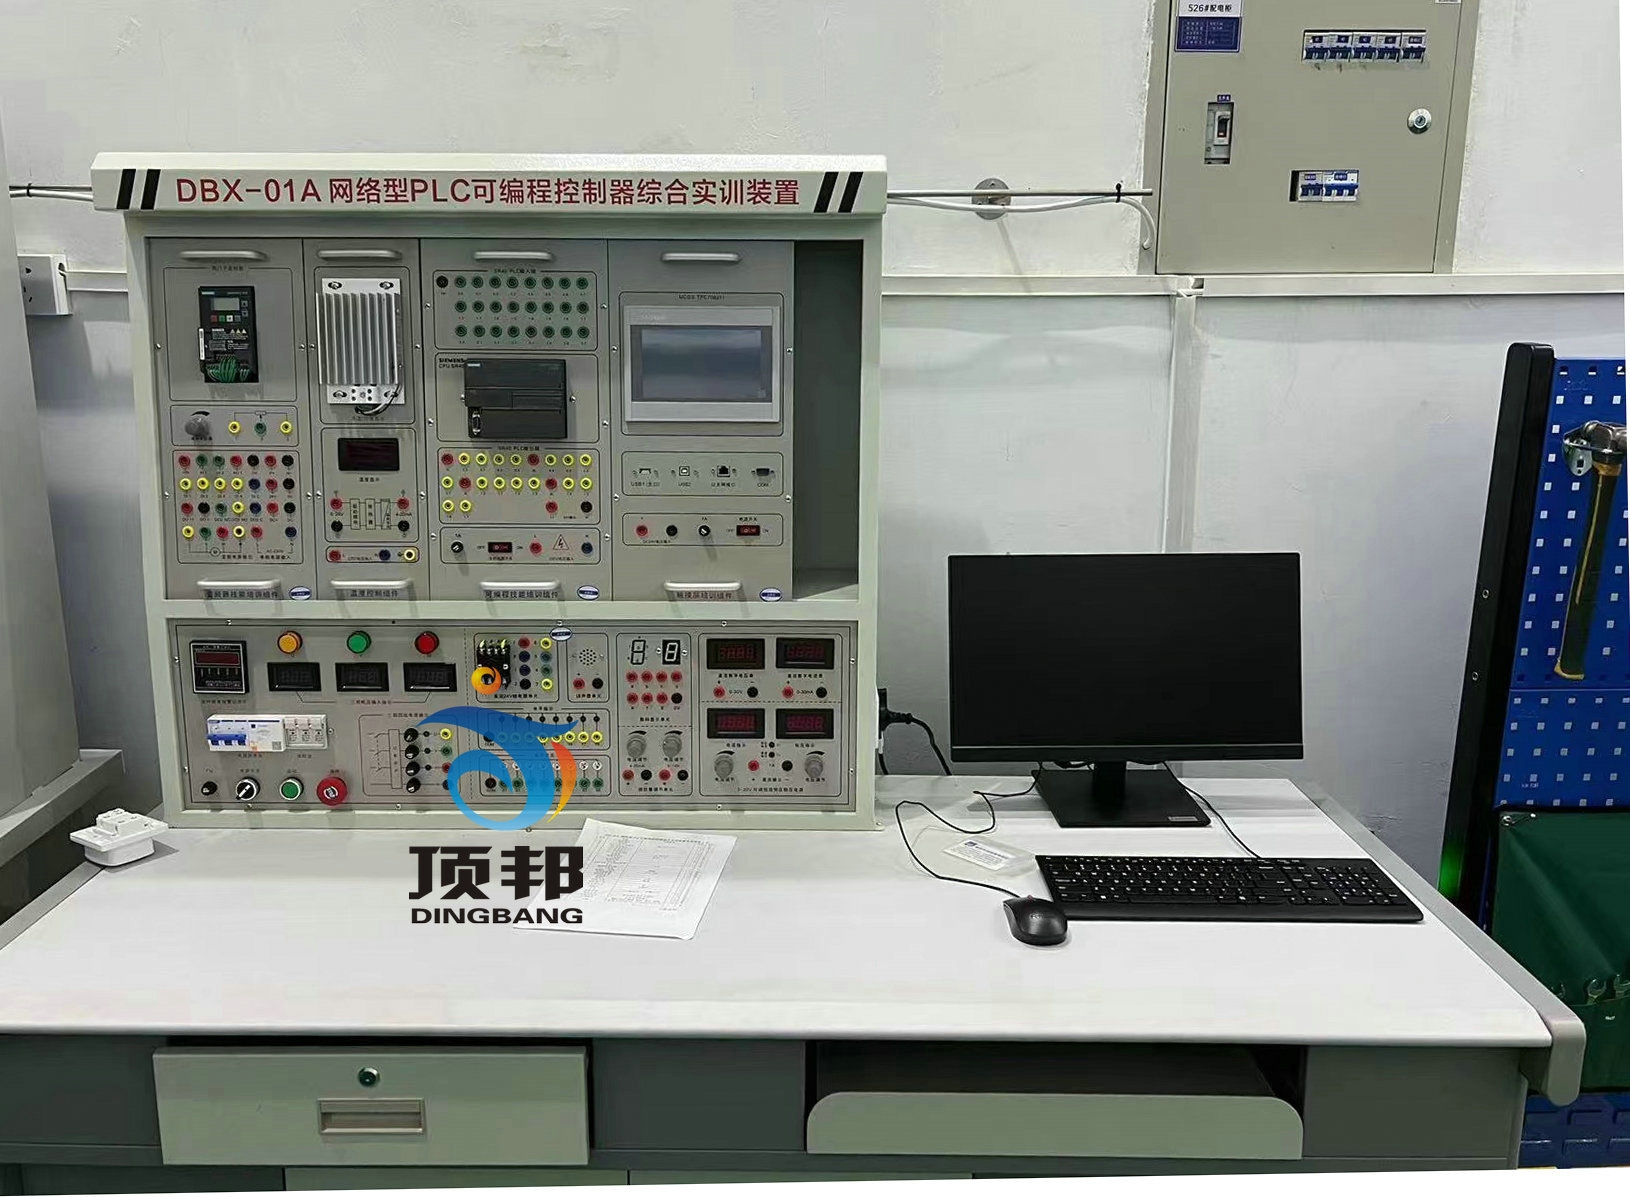 �W�j型PLC可�程控制器�C合����b置(S7-1500)